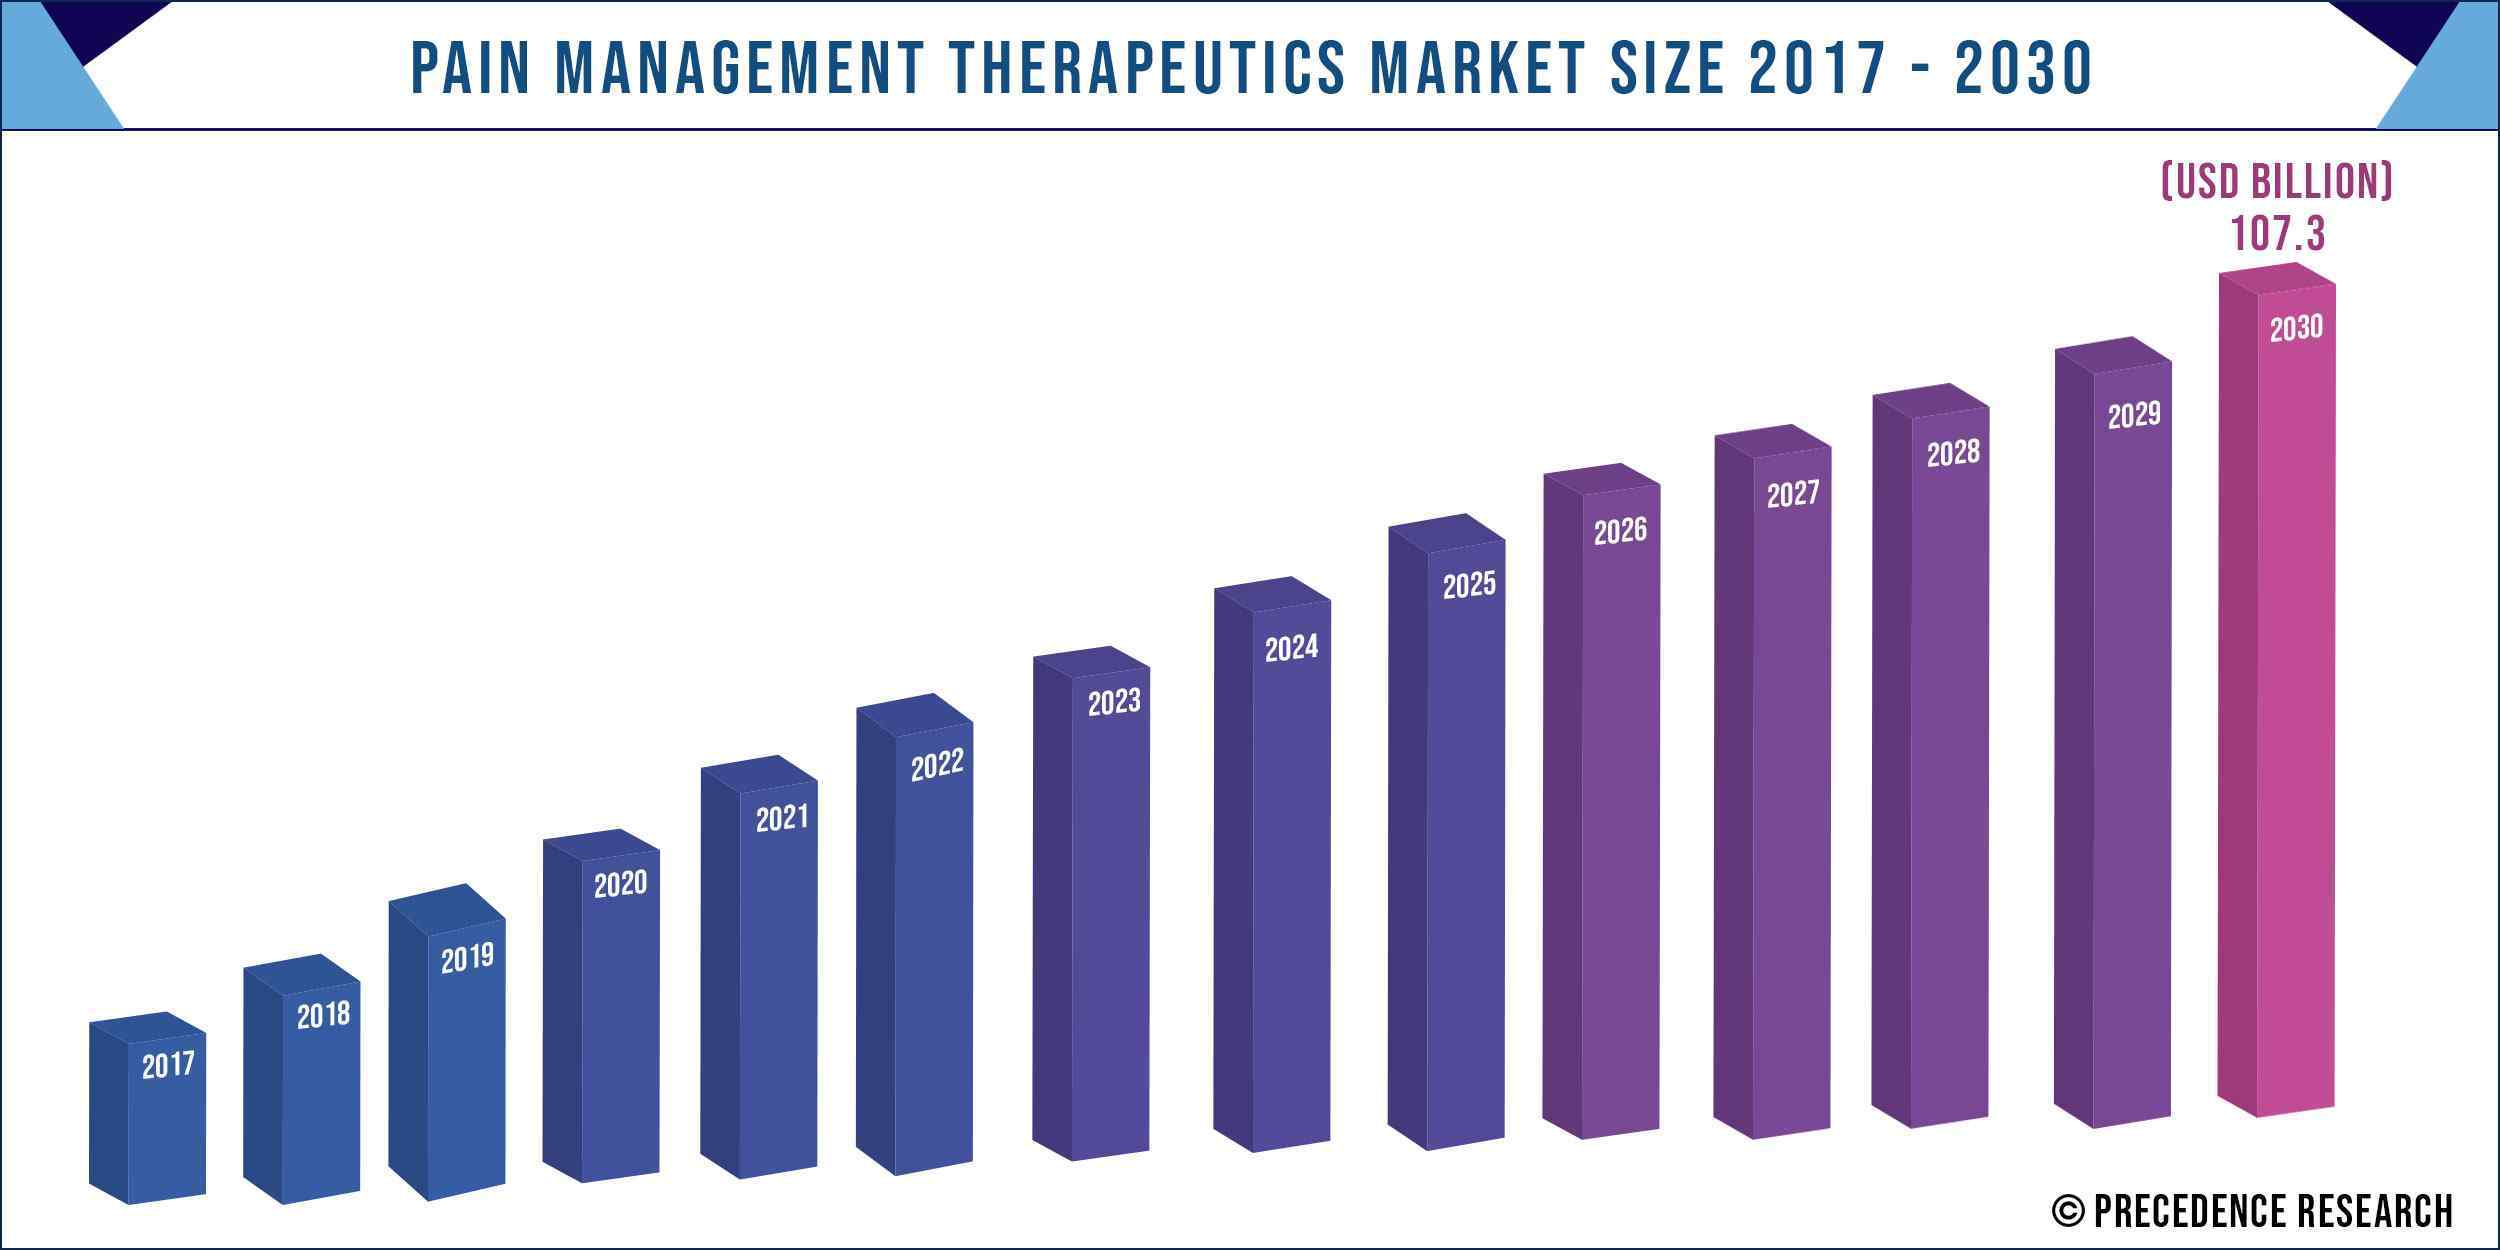 Pain Management Therapeutics Market Size 2017-2030